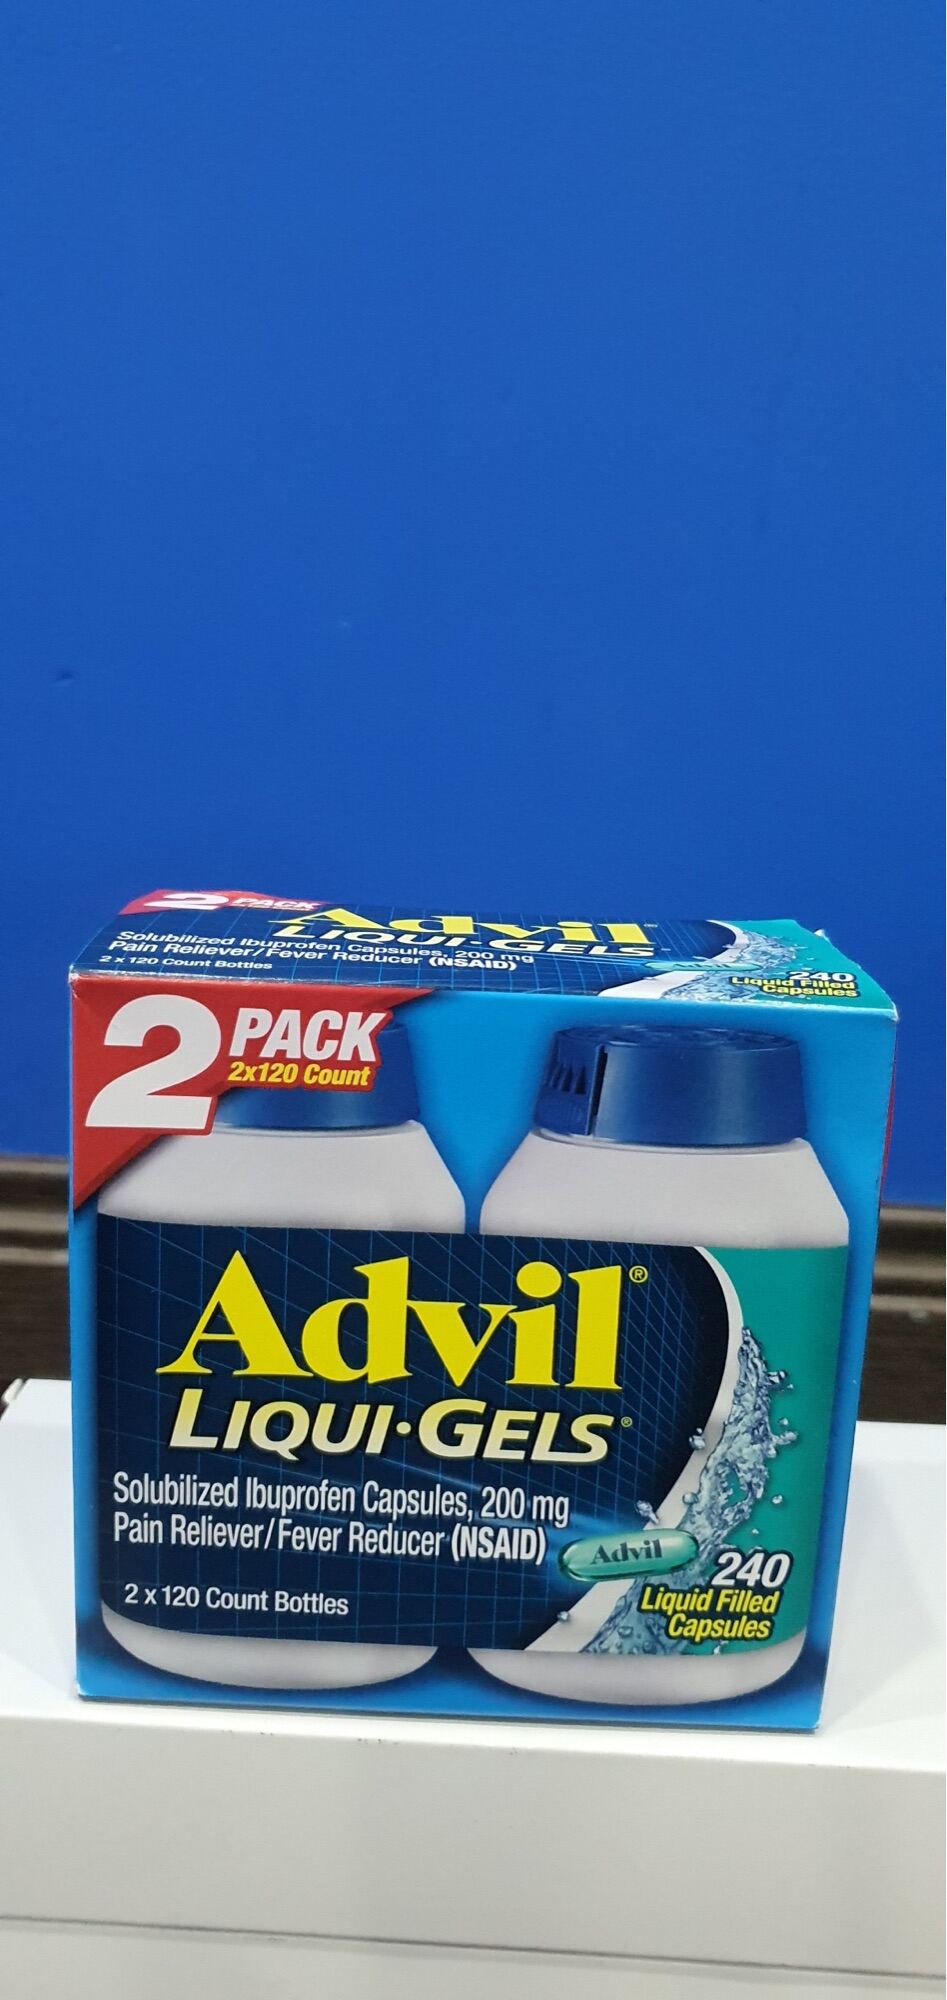 Viên Advil Giảm Đau - Hạ Sốt của Mỹ - 2 hộp 120 viên 1 hộp